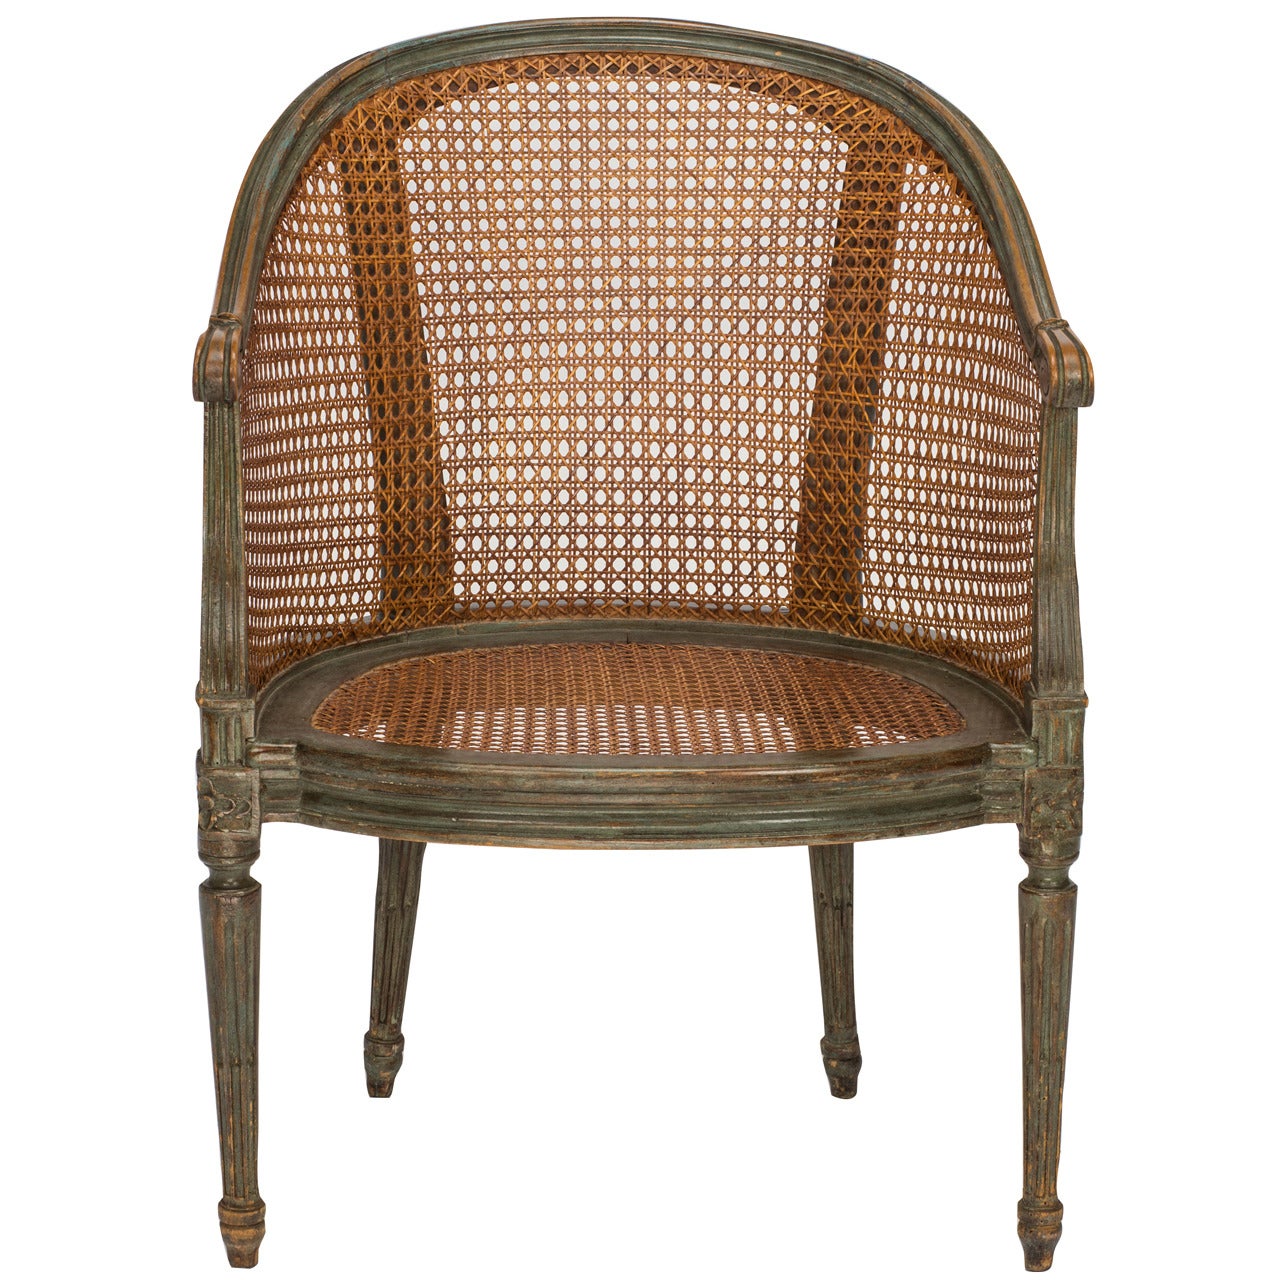 Louix XVI Style Cane Chair